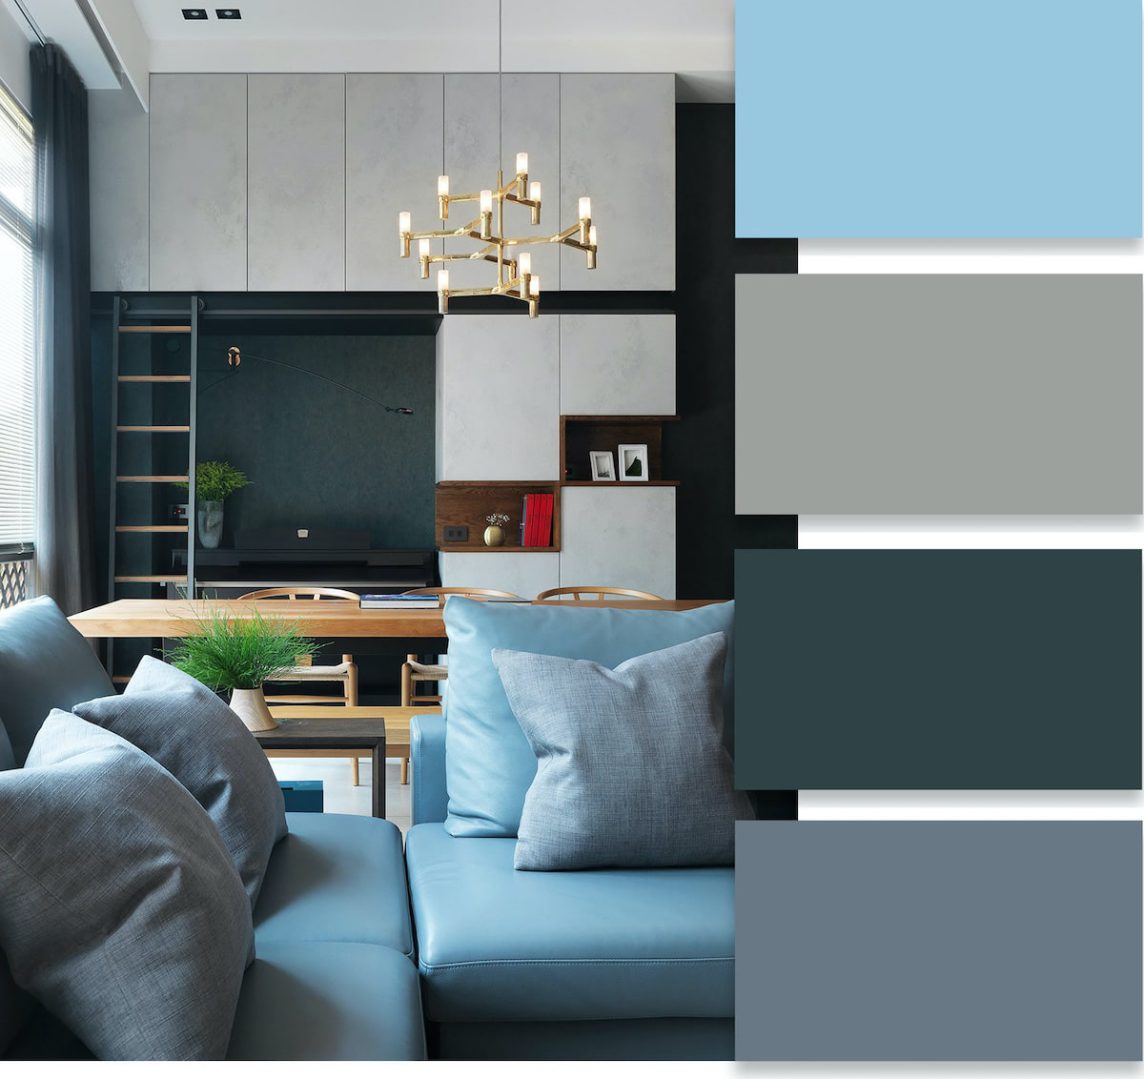 Màu sắc đóng vai trò quan trọng trong sự thành công của thiết kế nội thất nhà hẹp. Nó góp phần ảnh hưởng đến tâm trạng cũng như cách mọi người nhìn nhận không gian
